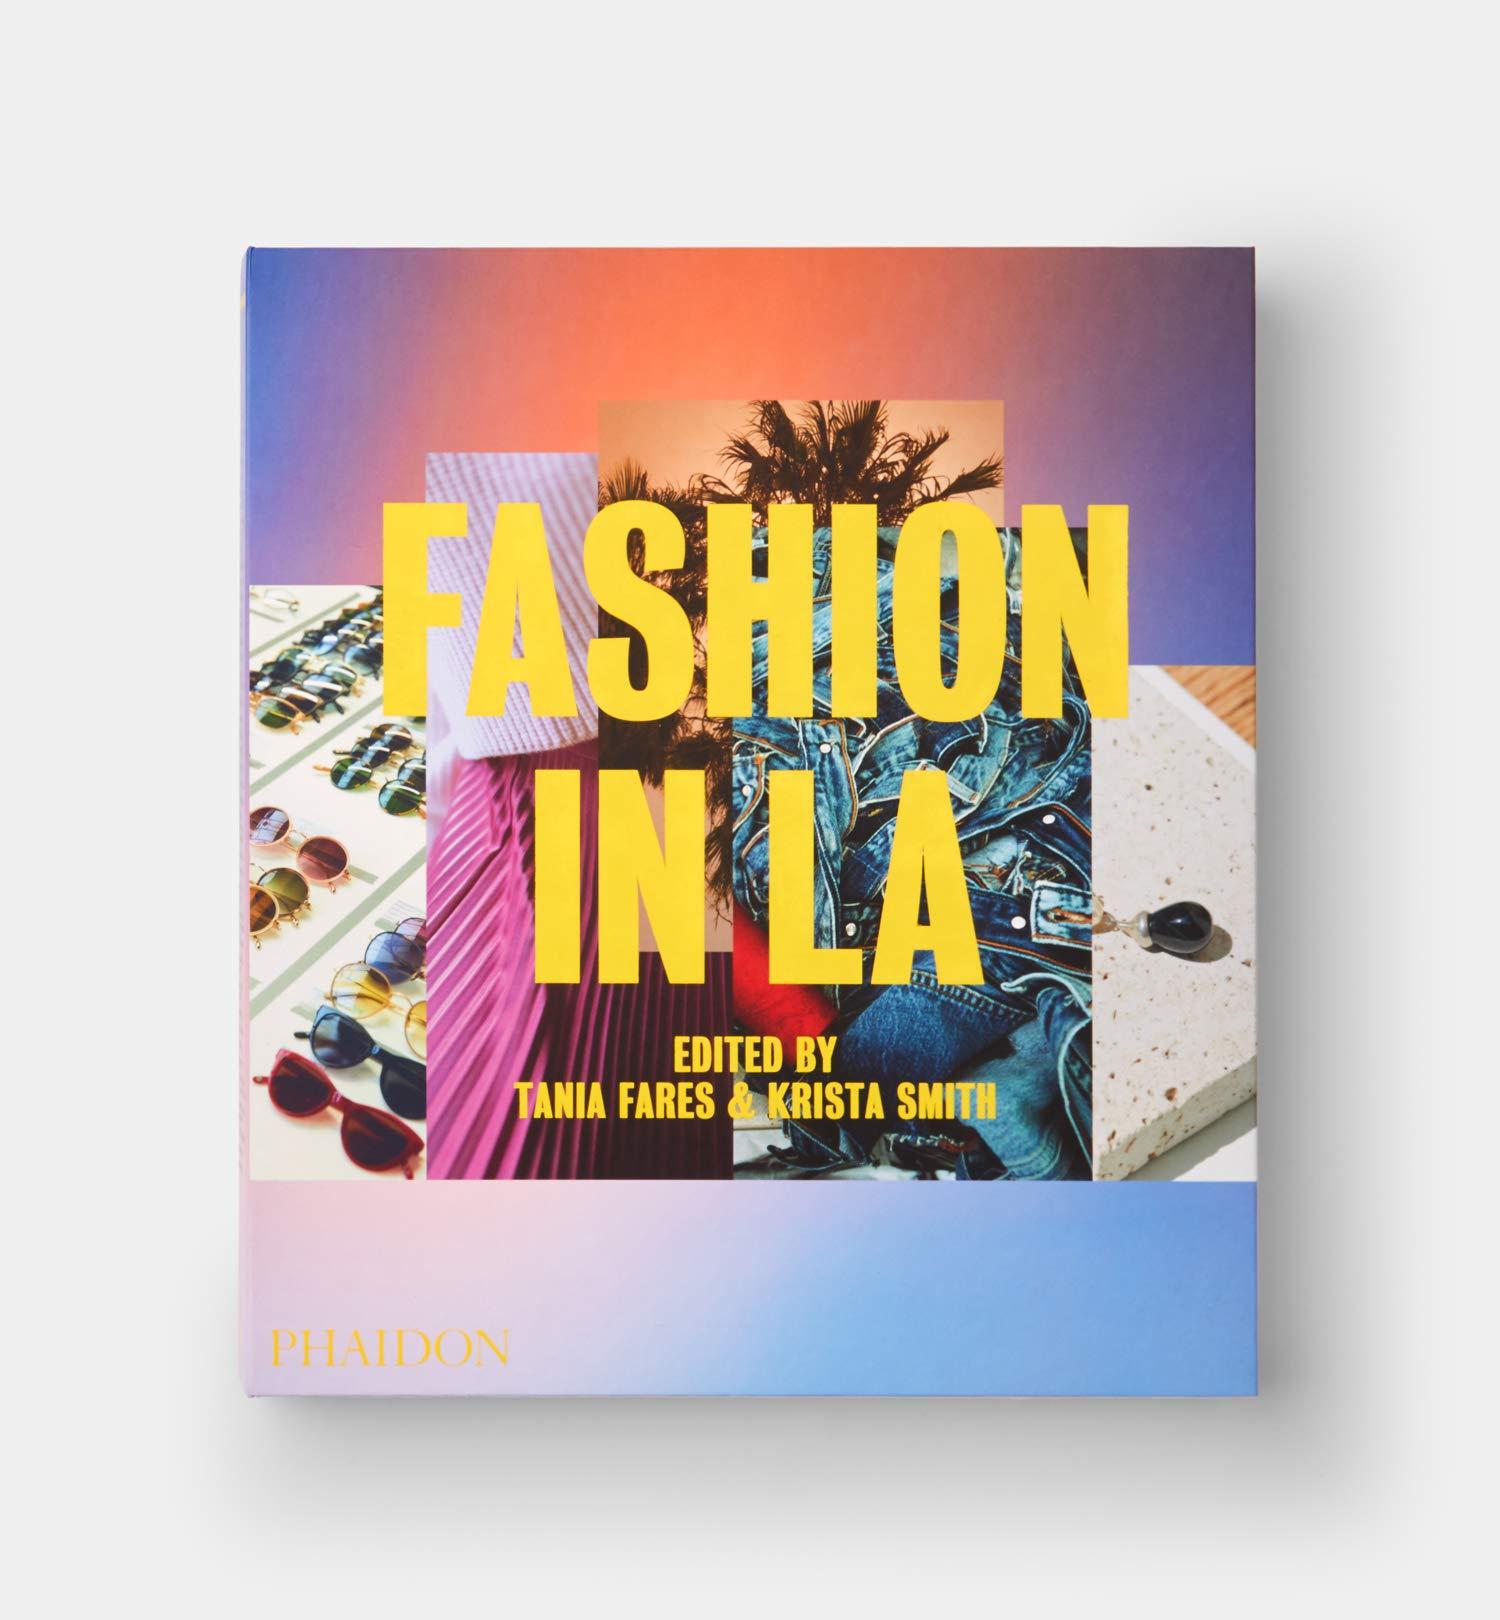 In Stock in Los Angeles, Fashion in LA by Tania Fares & Krista Smith 2